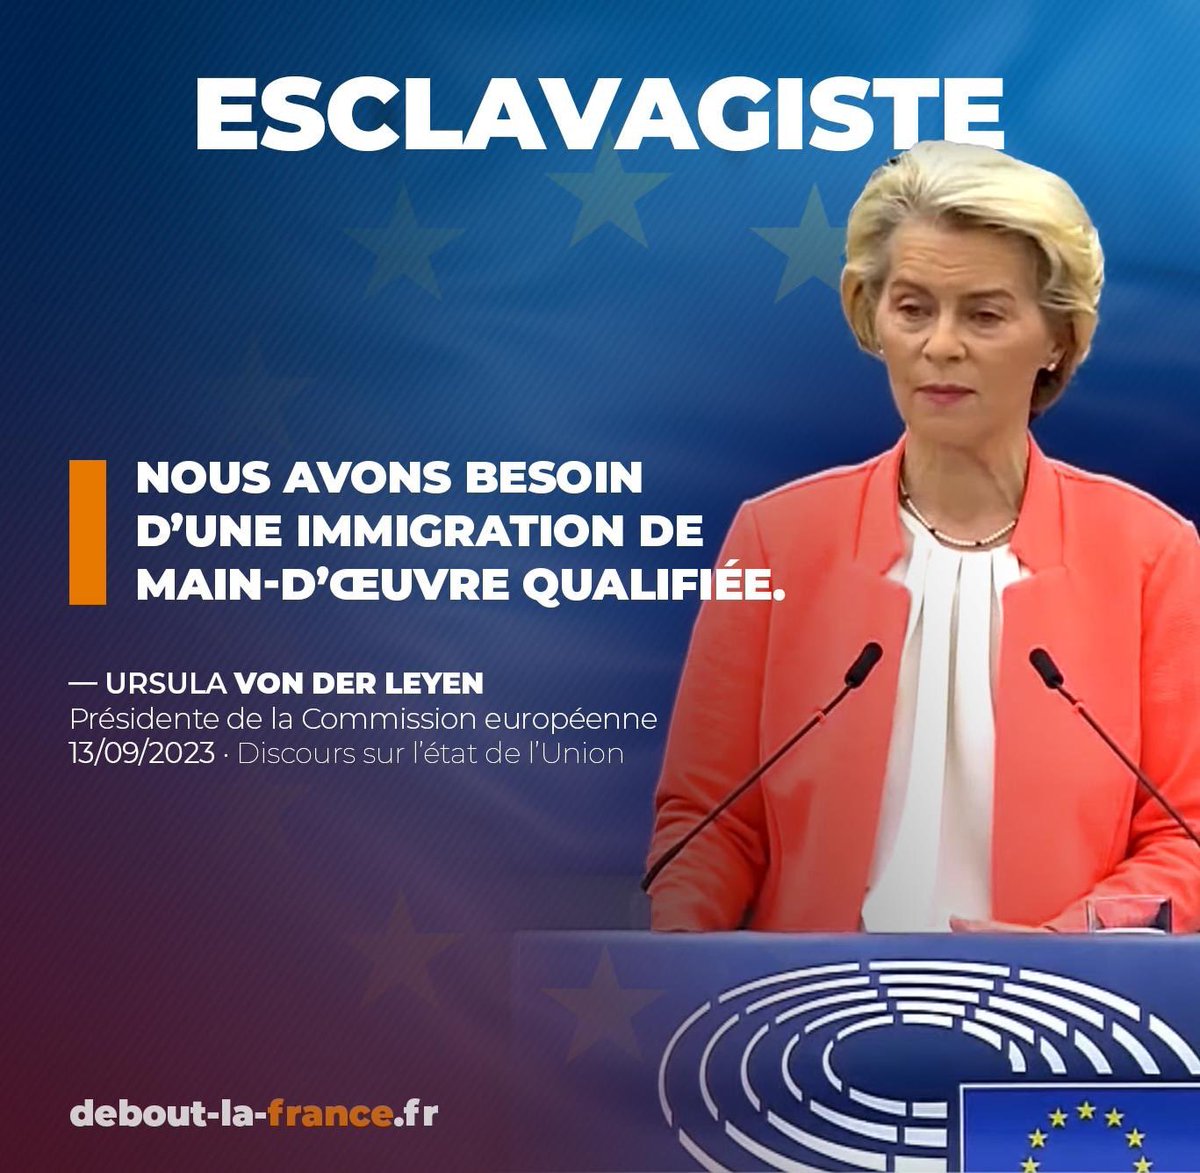 U. Von Der Leyen annonce que l'UE a des millions d'emplois qui cherchent preneurs et veut plus d'immigration, c'est une pure folie ! 
#SOTEU #SOTEU2023